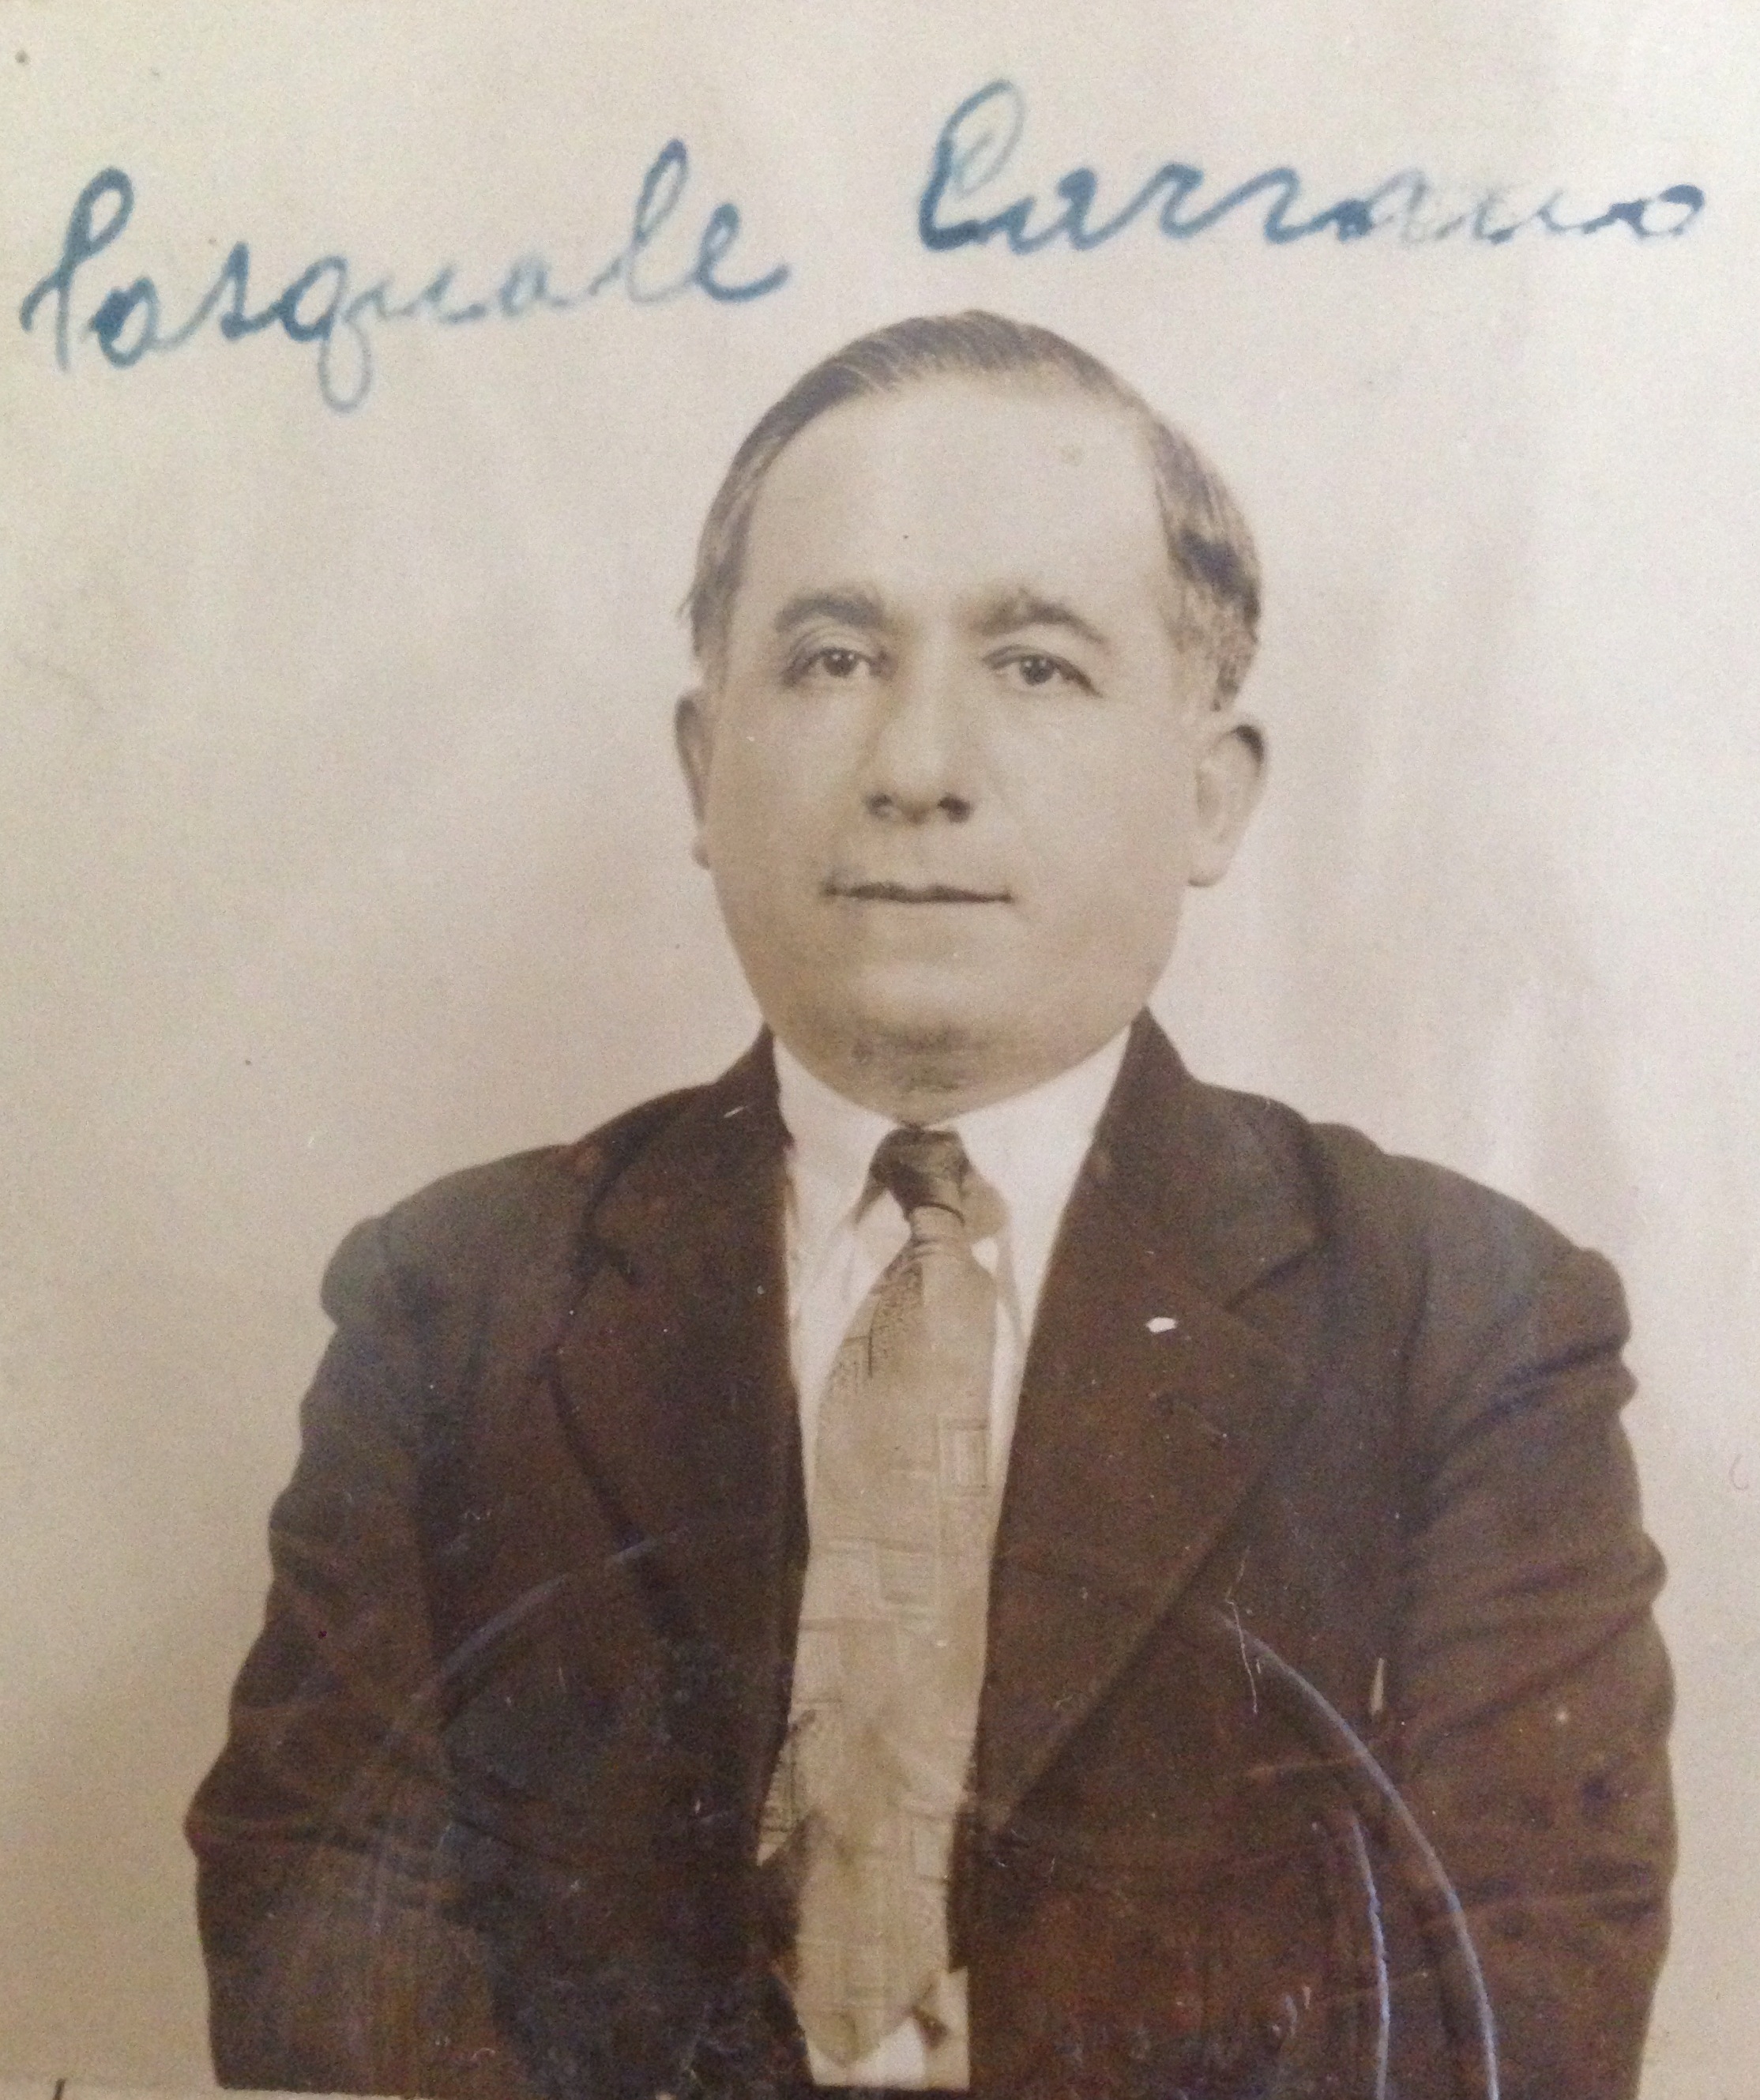 Pasquale Carrano